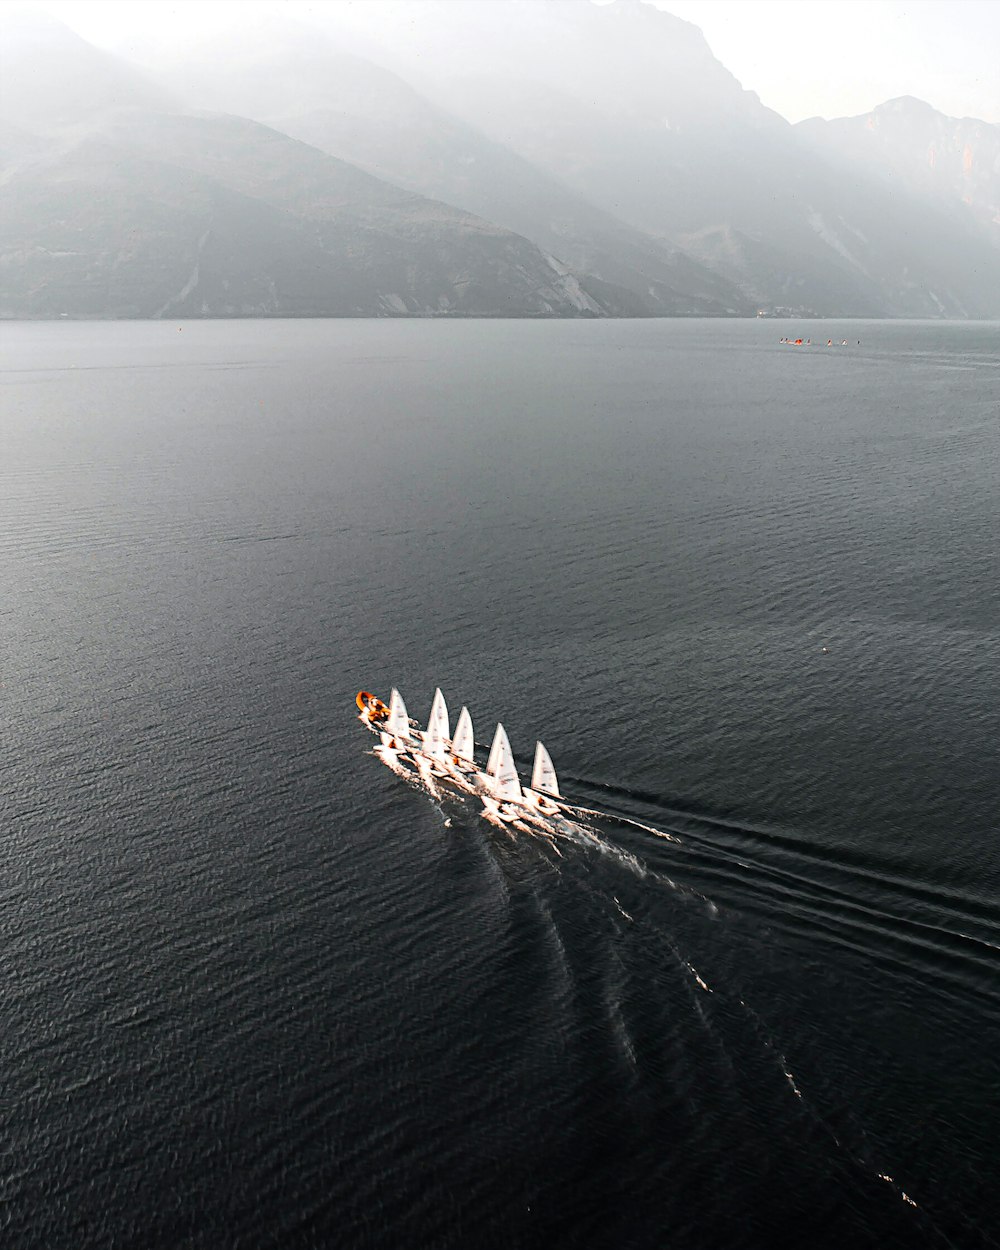 Un grupo de barcos navegando a través de una gran masa de agua